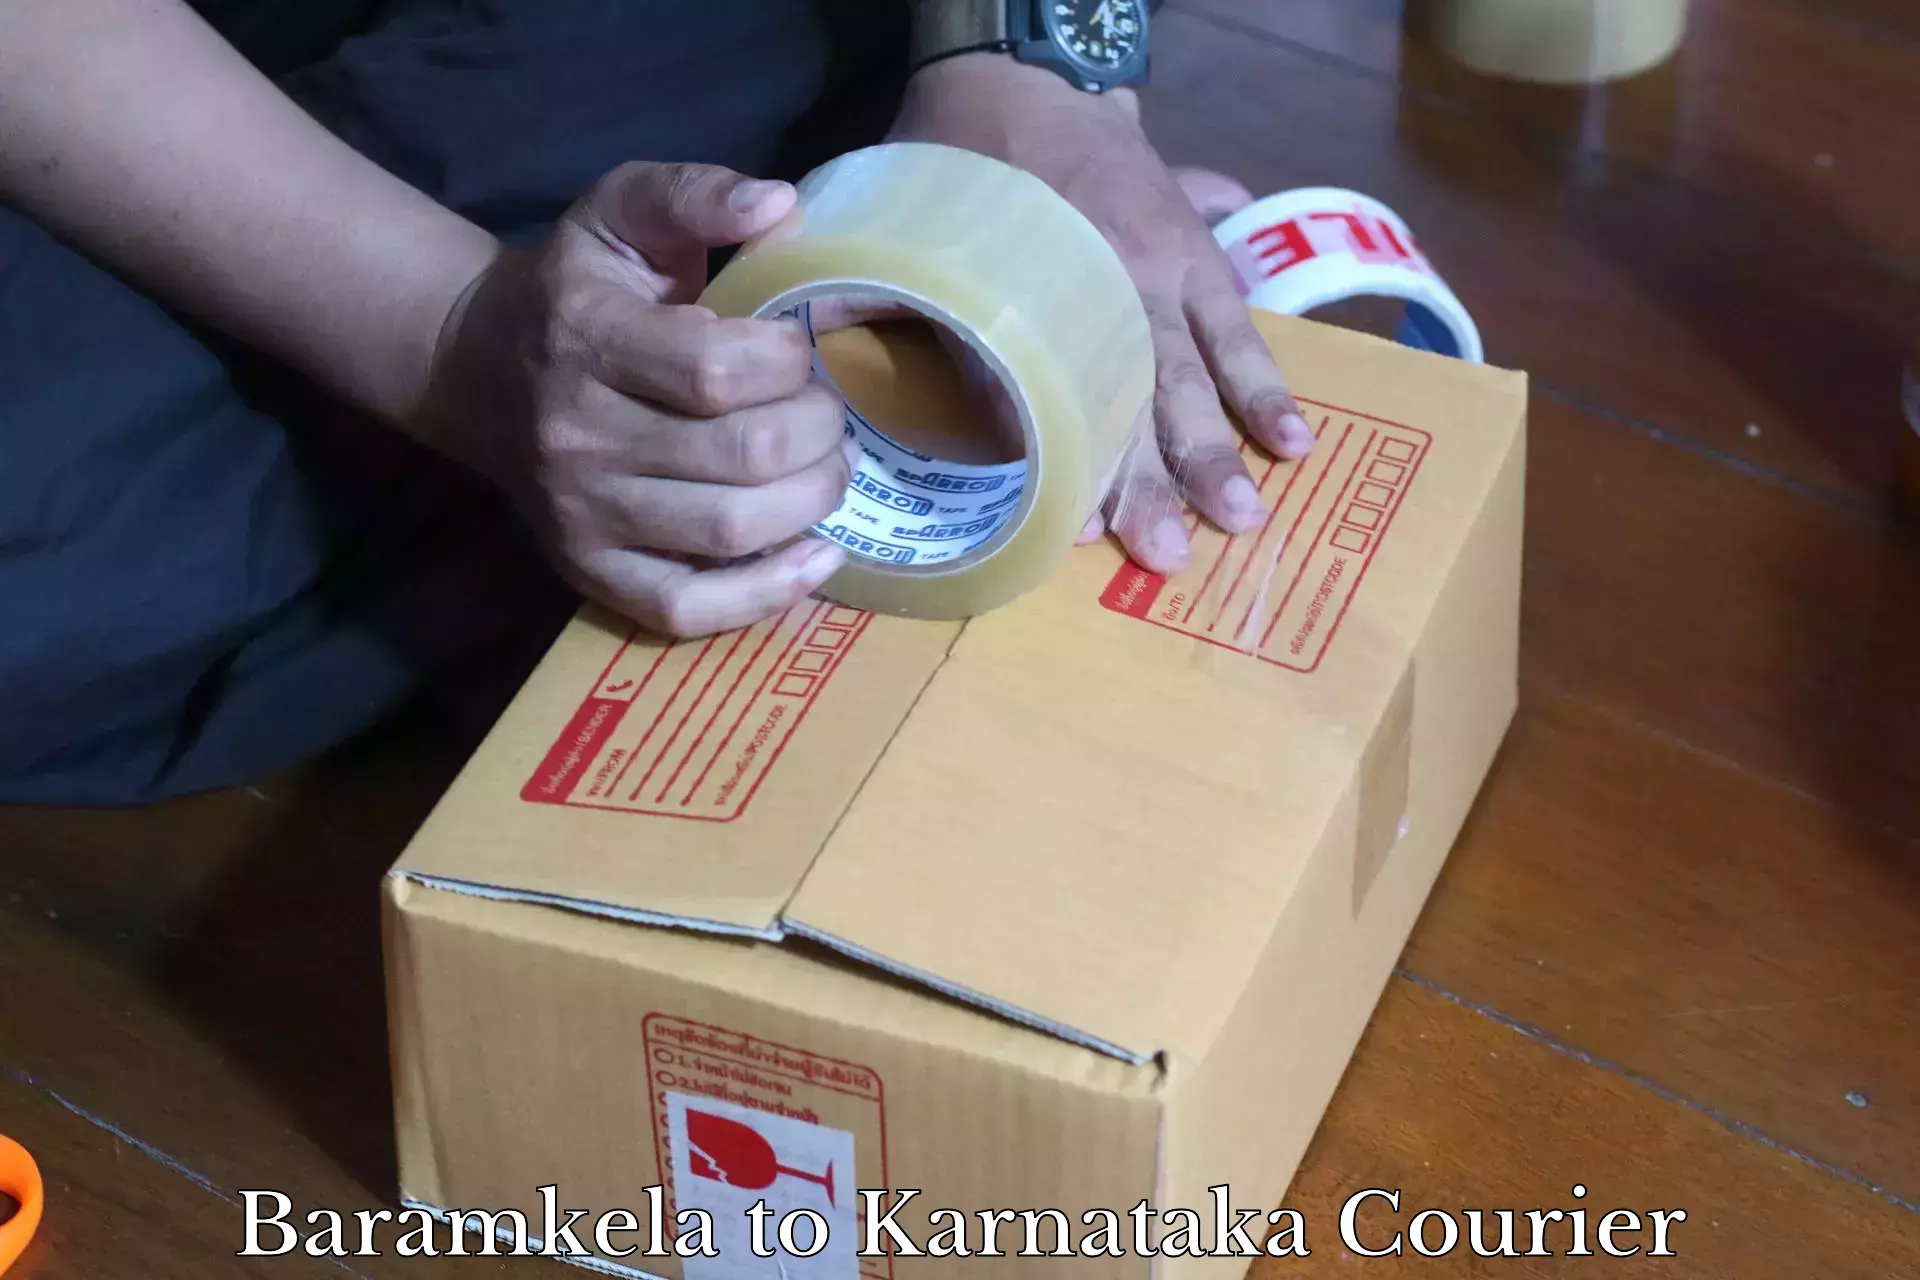 International parcel service Baramkela to Yenepoya Mangalore